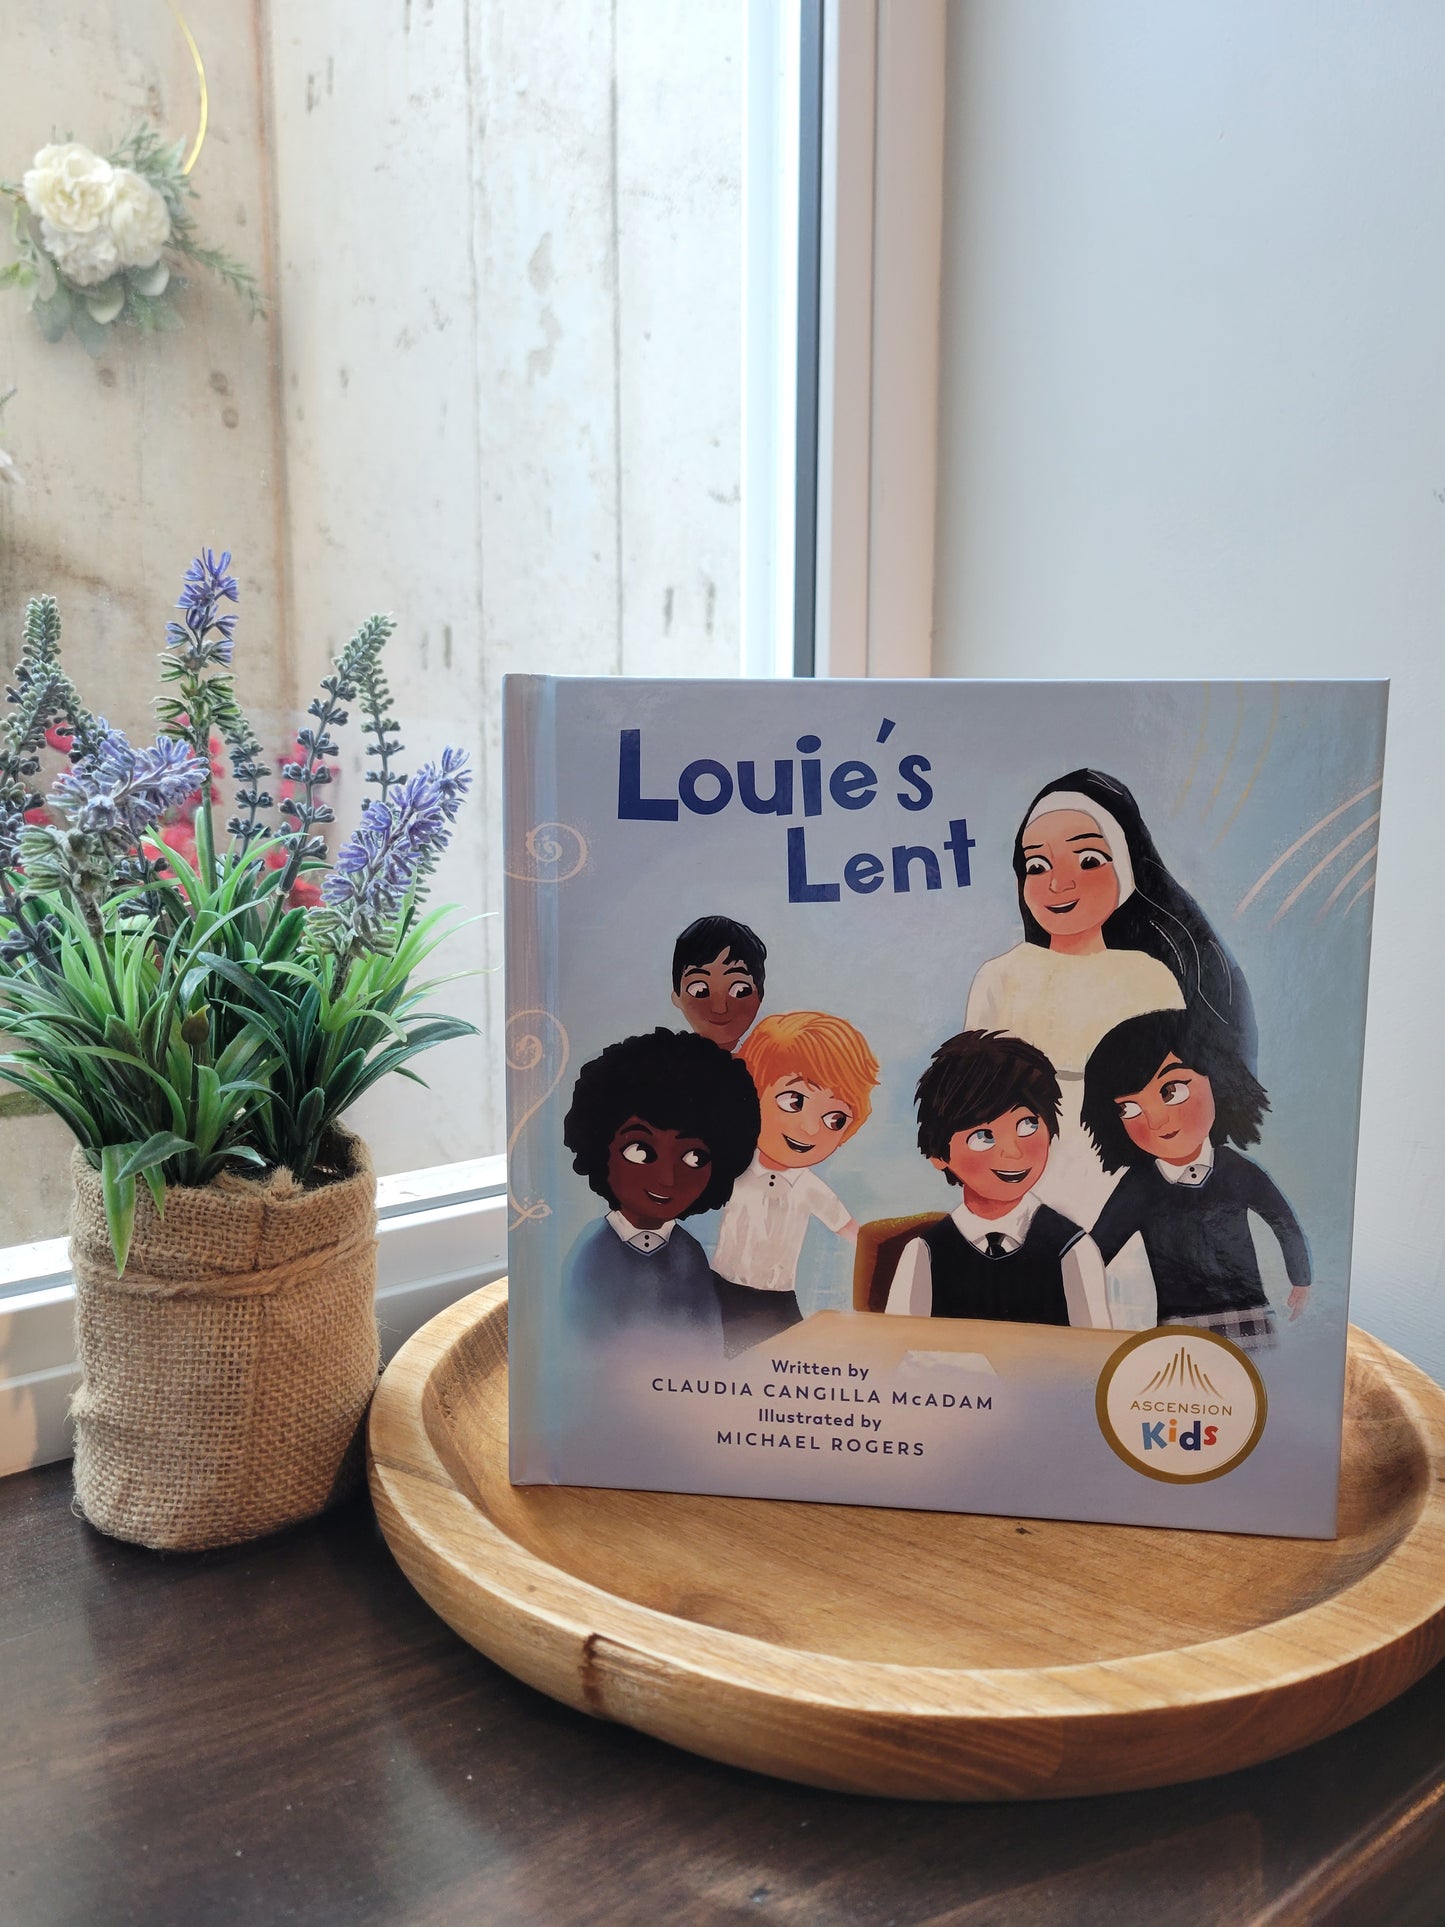 Louie's Lent